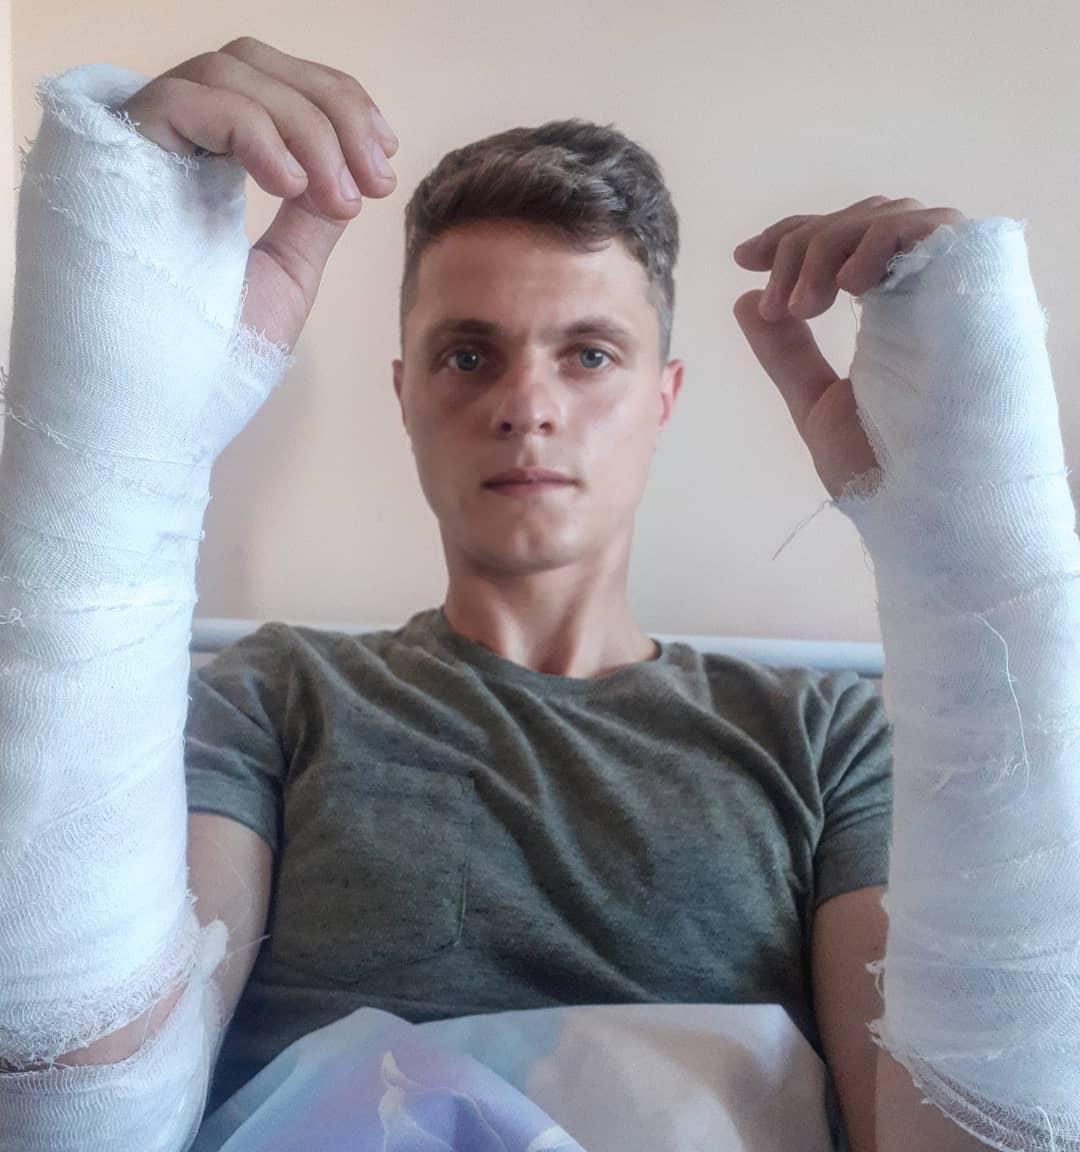 Polis bröt båda armarna på den belarusiske journalisten Ruslan Kulevitj den 11 augusti.